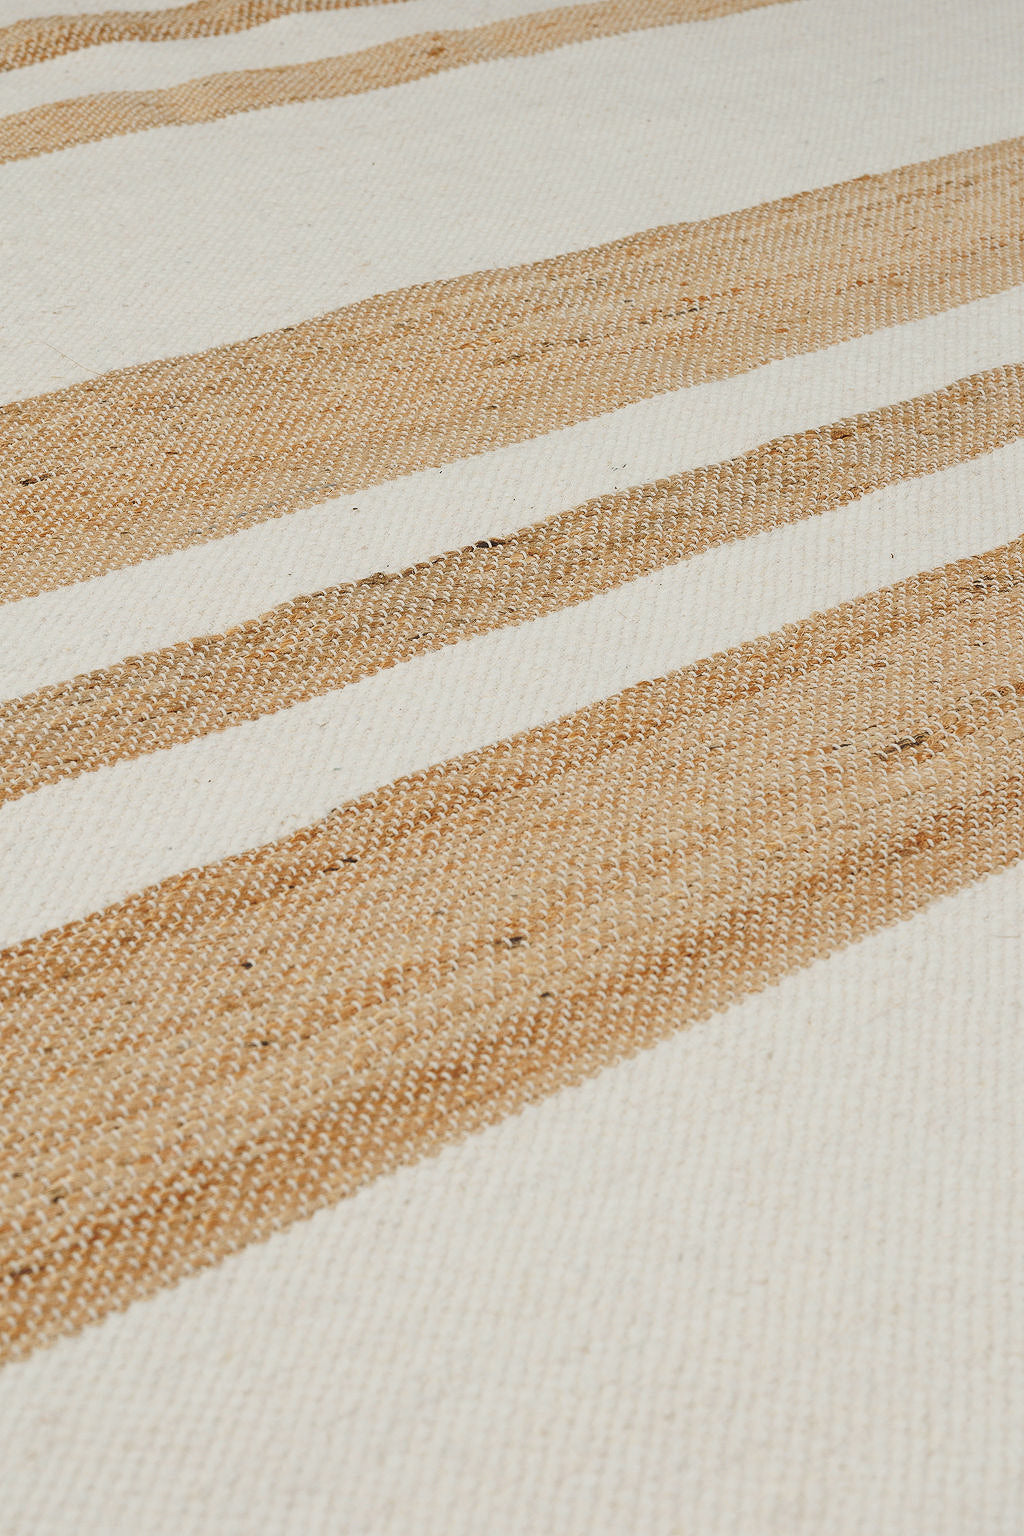 jute runner rug with white stripes